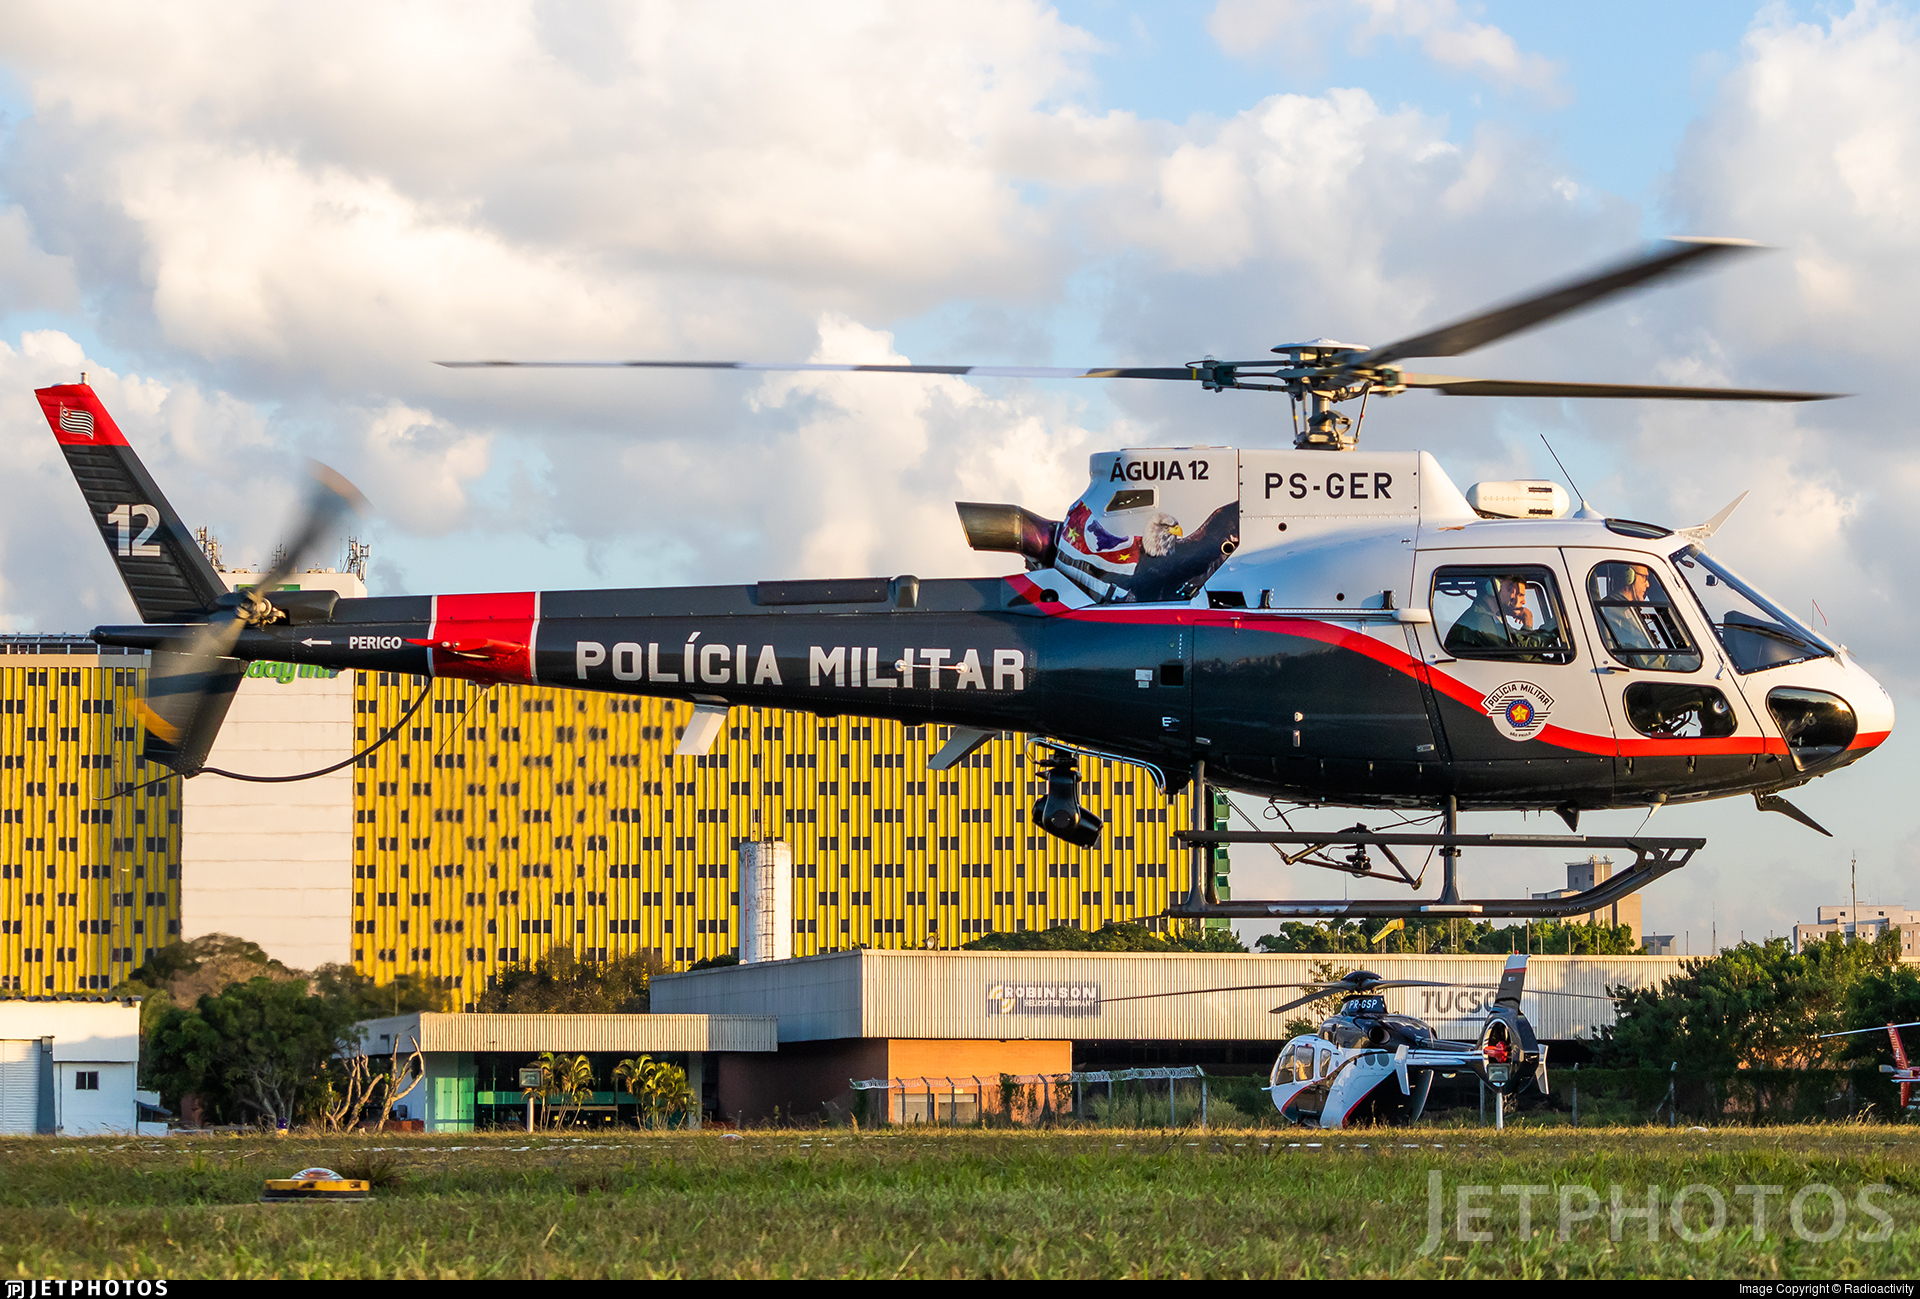 Está em operação o helicóptero Águia 12, da Polícia Militar de São Paulo, que chegou na noite de quarta-feira (1) no estado